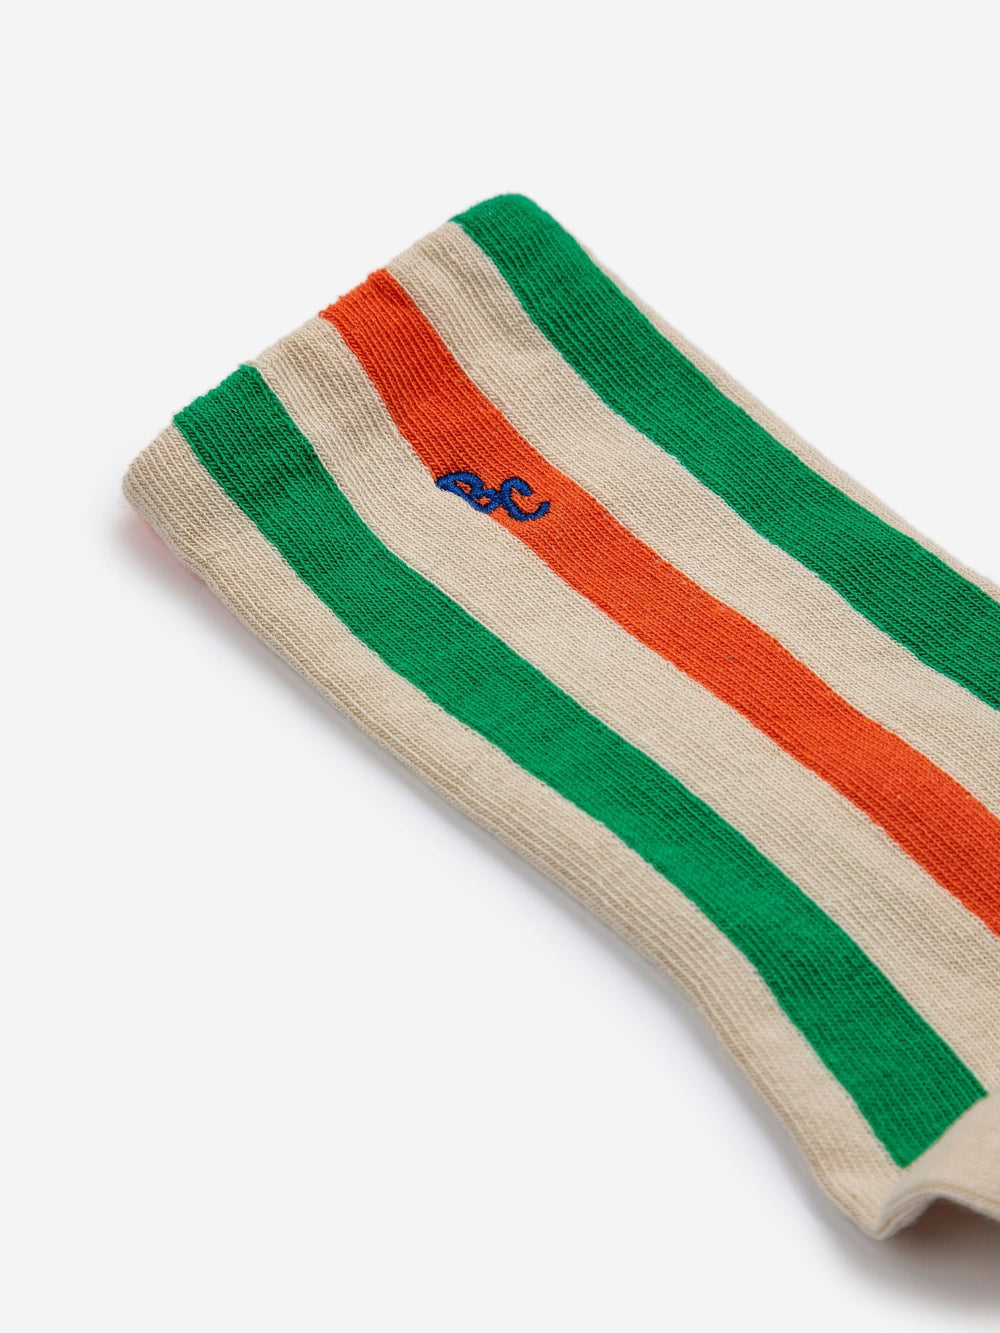 Vertical Stripes Long Socks - Beige - Posh New York